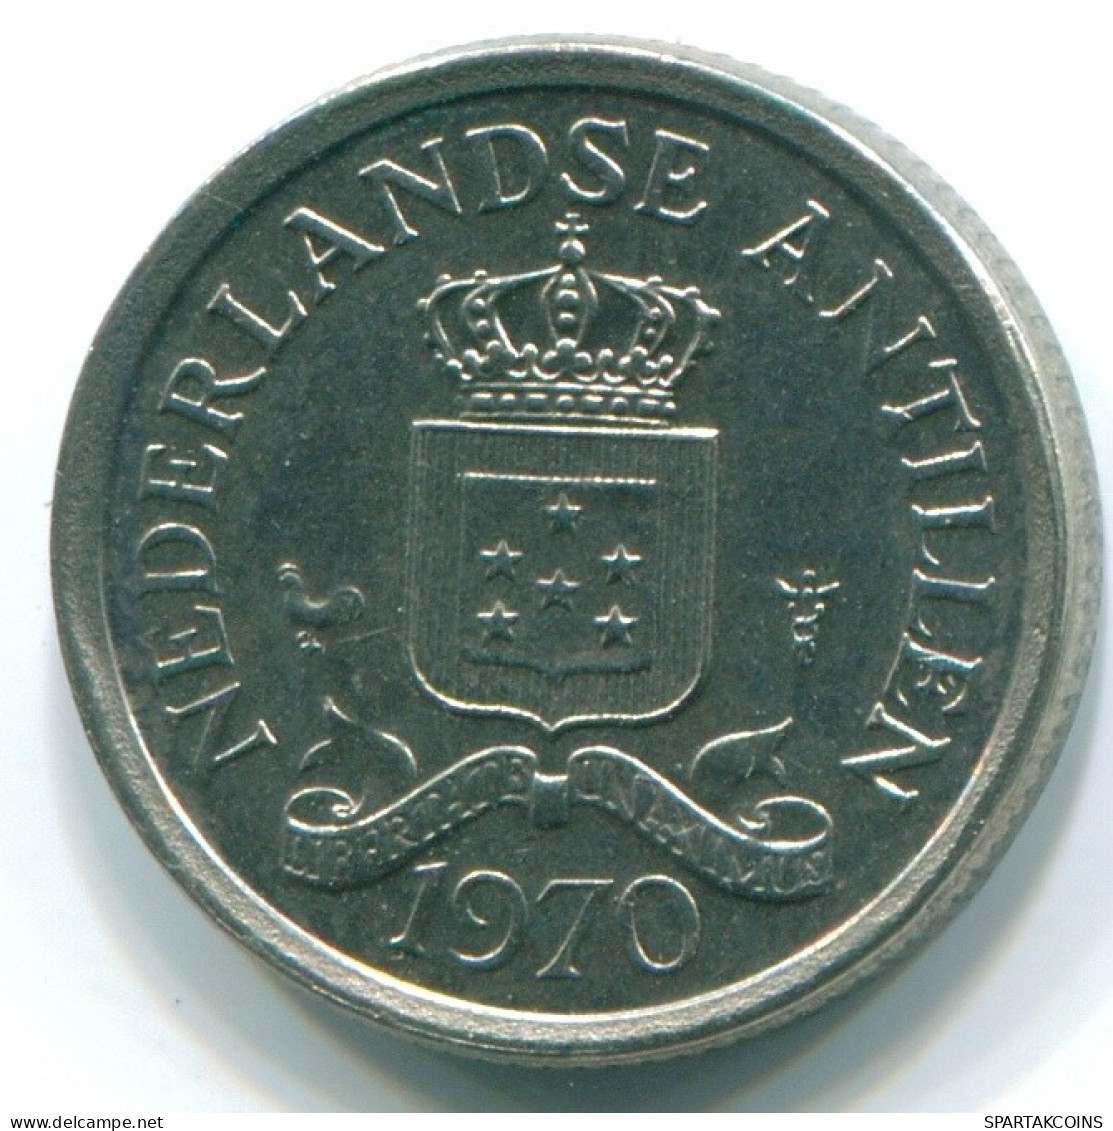 10 CENTS 1970 NETHERLANDS ANTILLES Nickel Colonial Coin #S13367.U.A - Antillas Neerlandesas